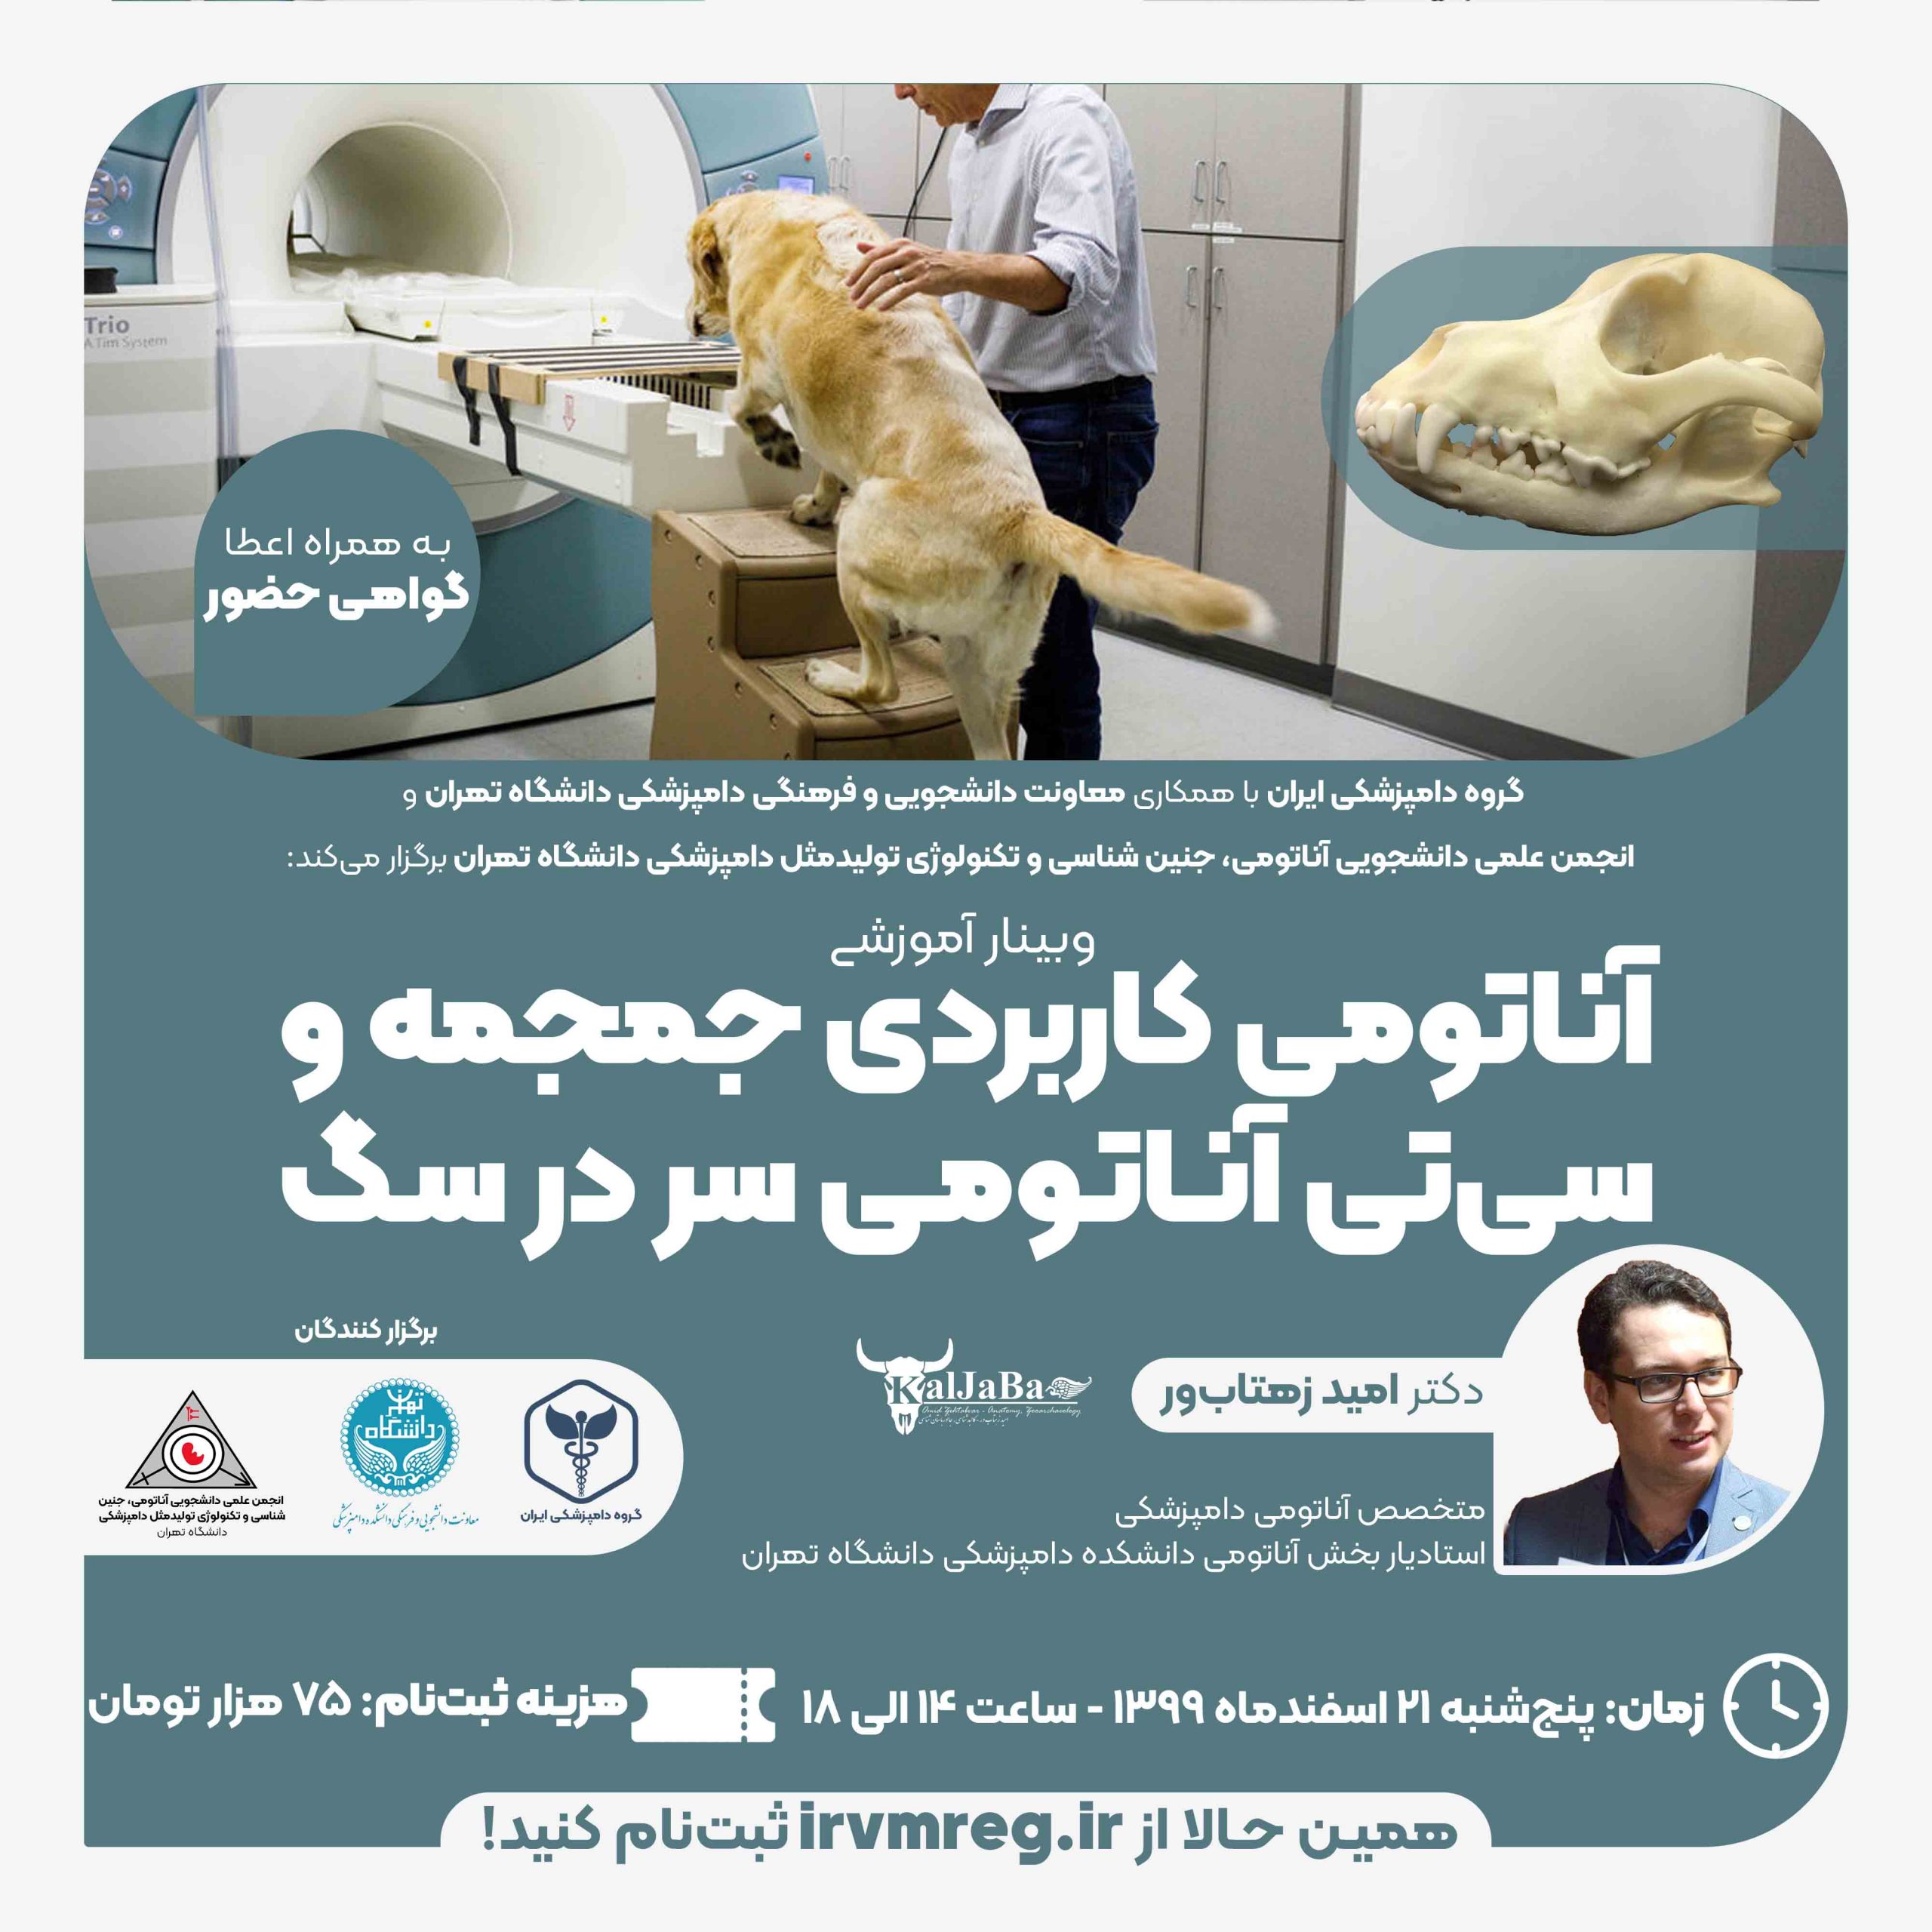 آناتومی کاربردی جمجمه و سی تی آناتومی سر در سگ ها - گروه دامپزشکی ایران